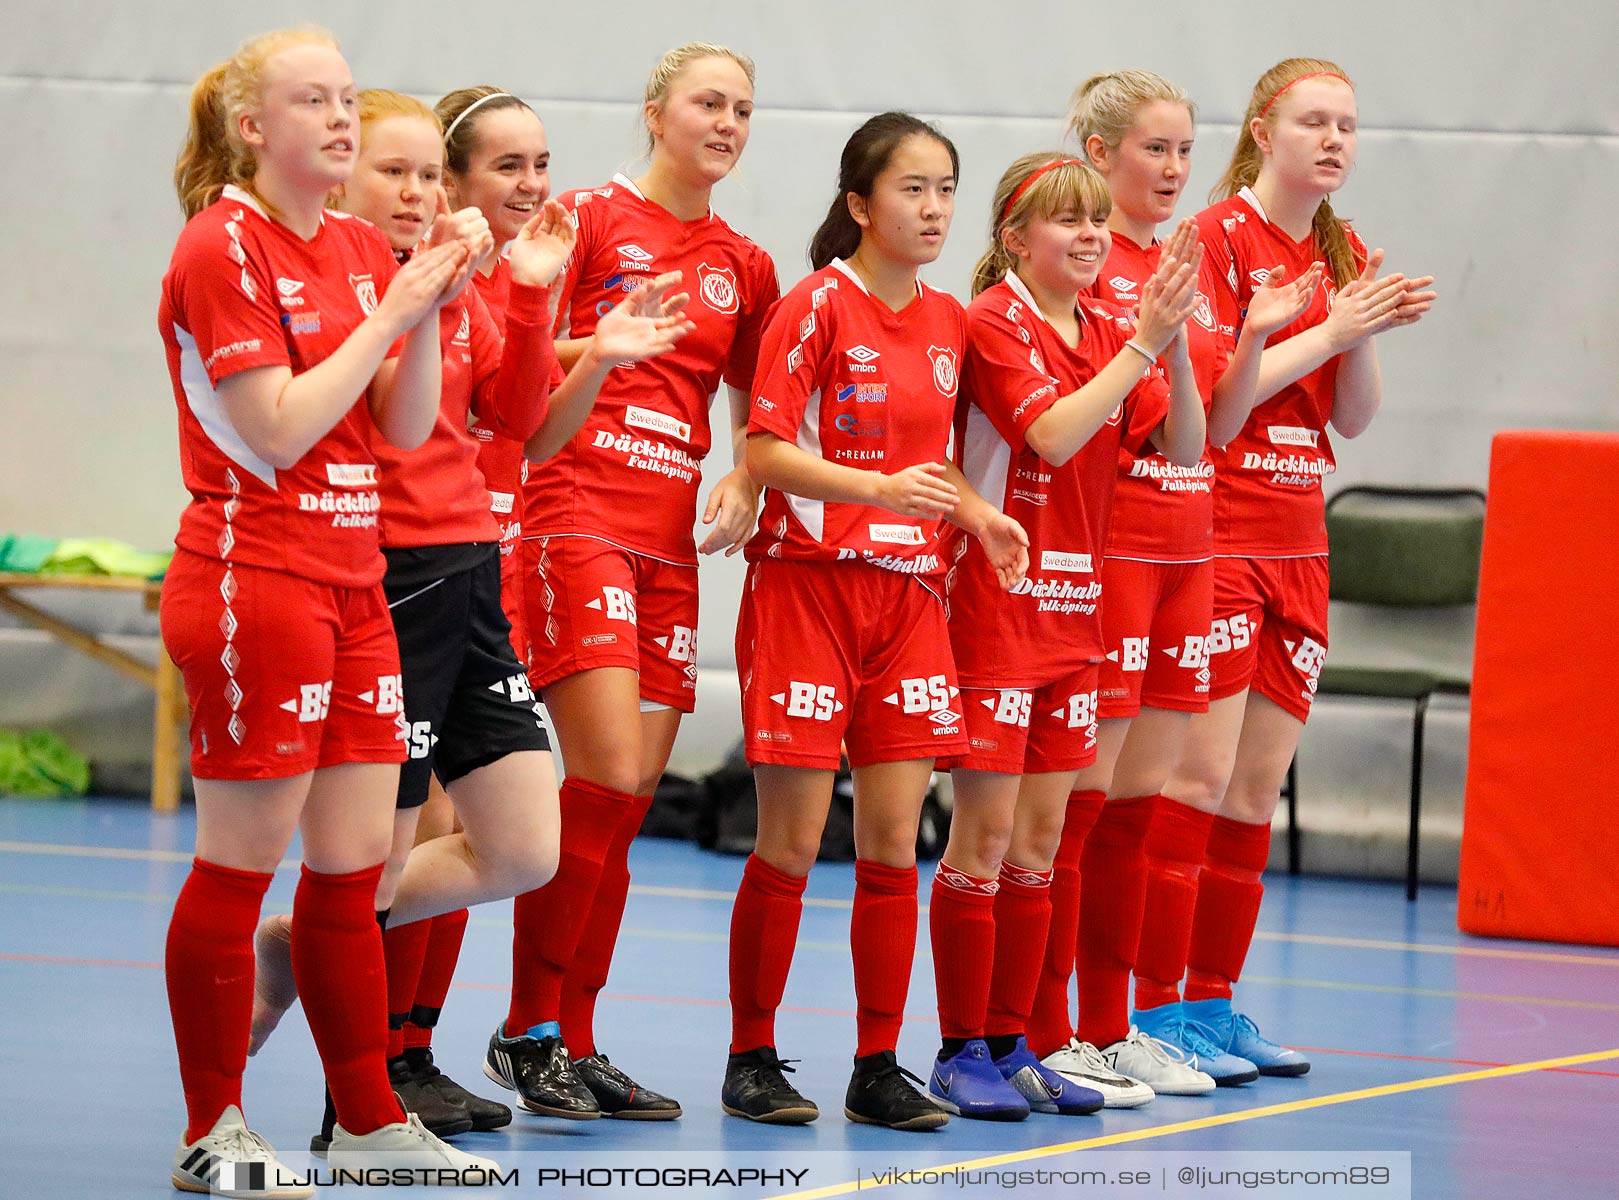 Skövde Futsalcup 2019 Damer Falköping Futsal Club-Falköpings KIK Röd,dam,Arena Skövde,Skövde,Sverige,Futsal,,2019,227737